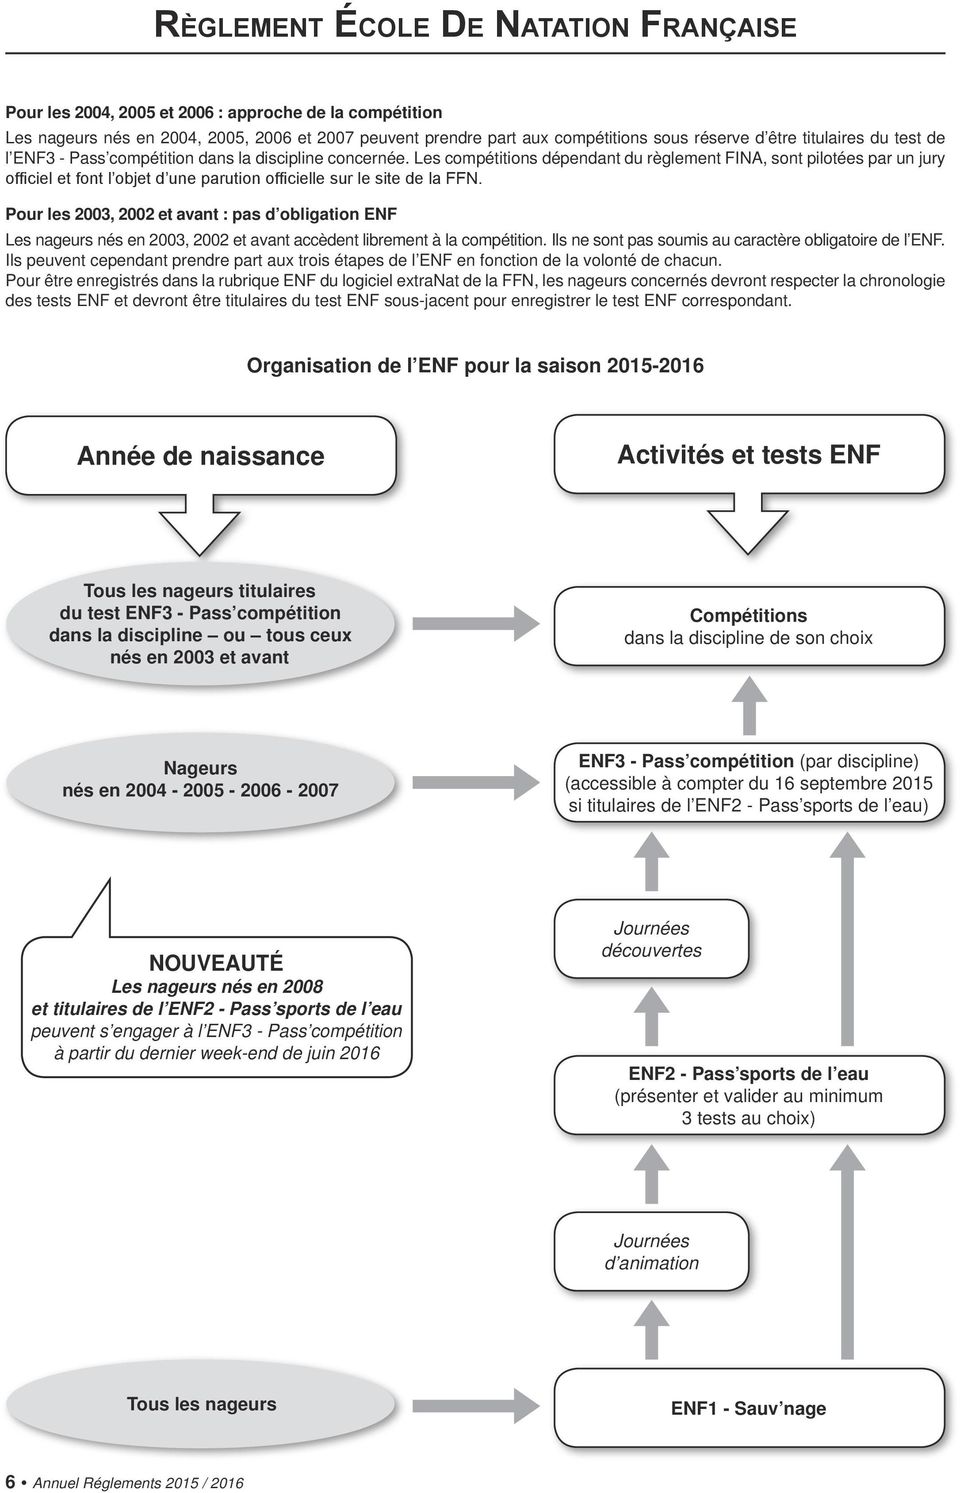 Pour les 2003, 2002 et avant : pas d obligation ENF Les nageurs nés en 2003, 2002 et avant accèdent librement à la compétition. Ils ne sont pas soumis au caractère obligatoire de l ENF.